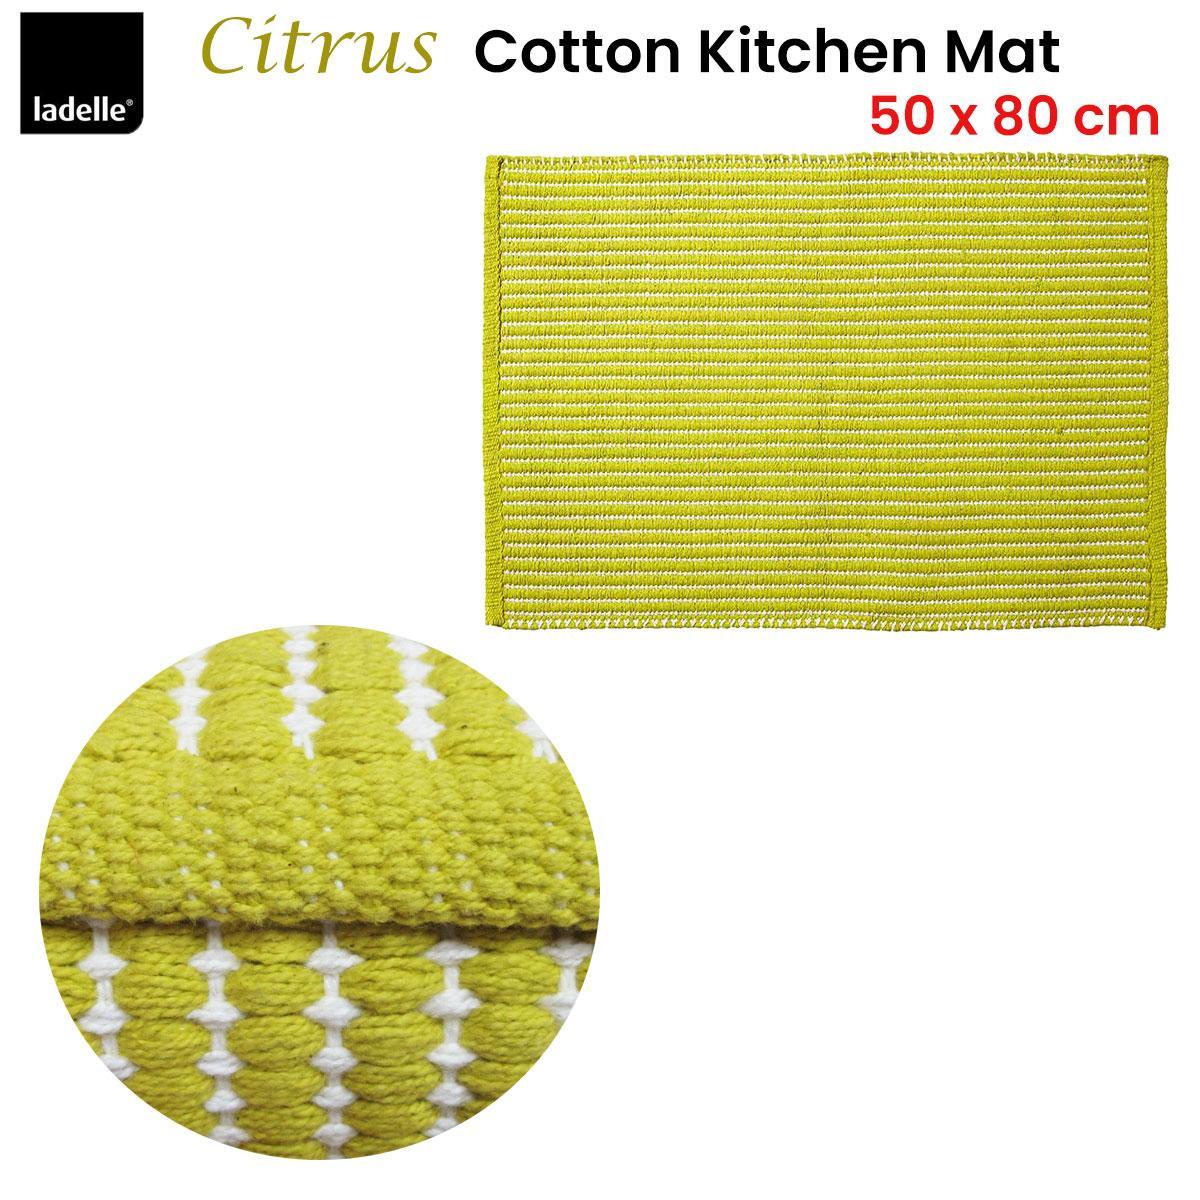 Classic Citrus 100% Cotton Kitchen Mat Rug